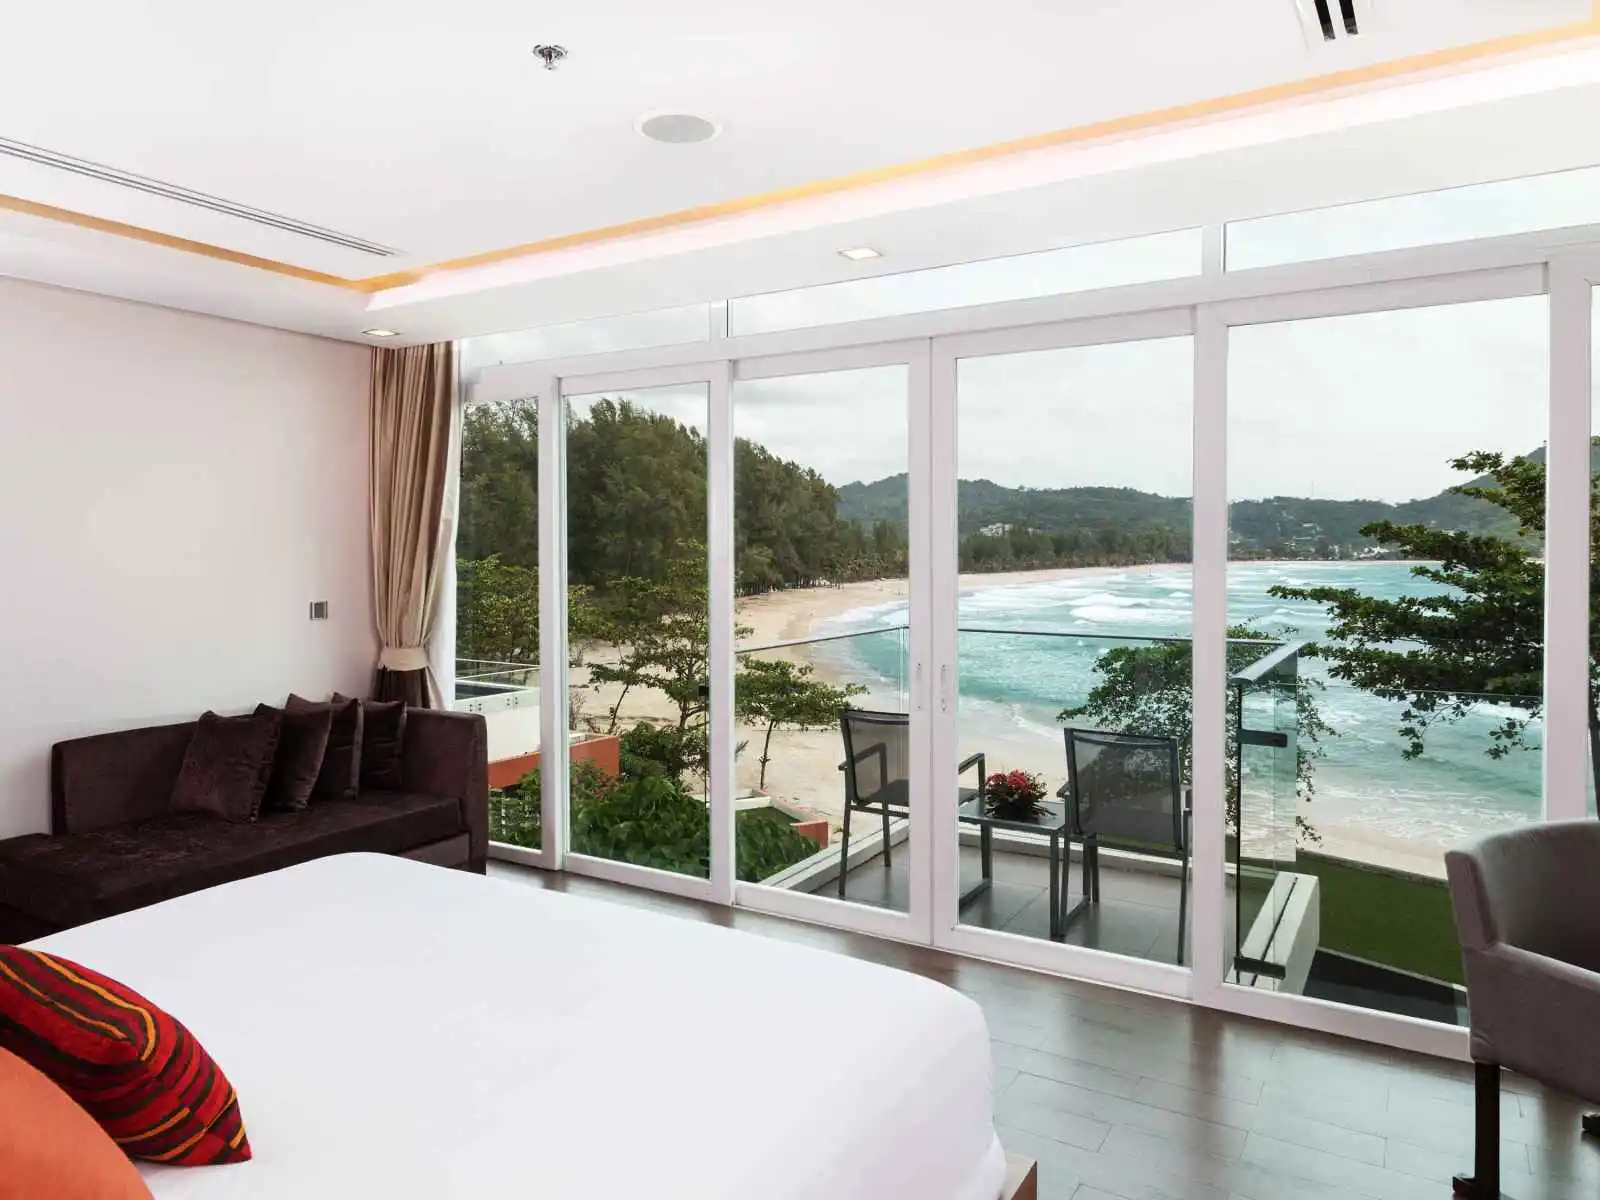 Thaïlande - Phuket - Hôtel Novotel Phuket Kamala Beach 4*